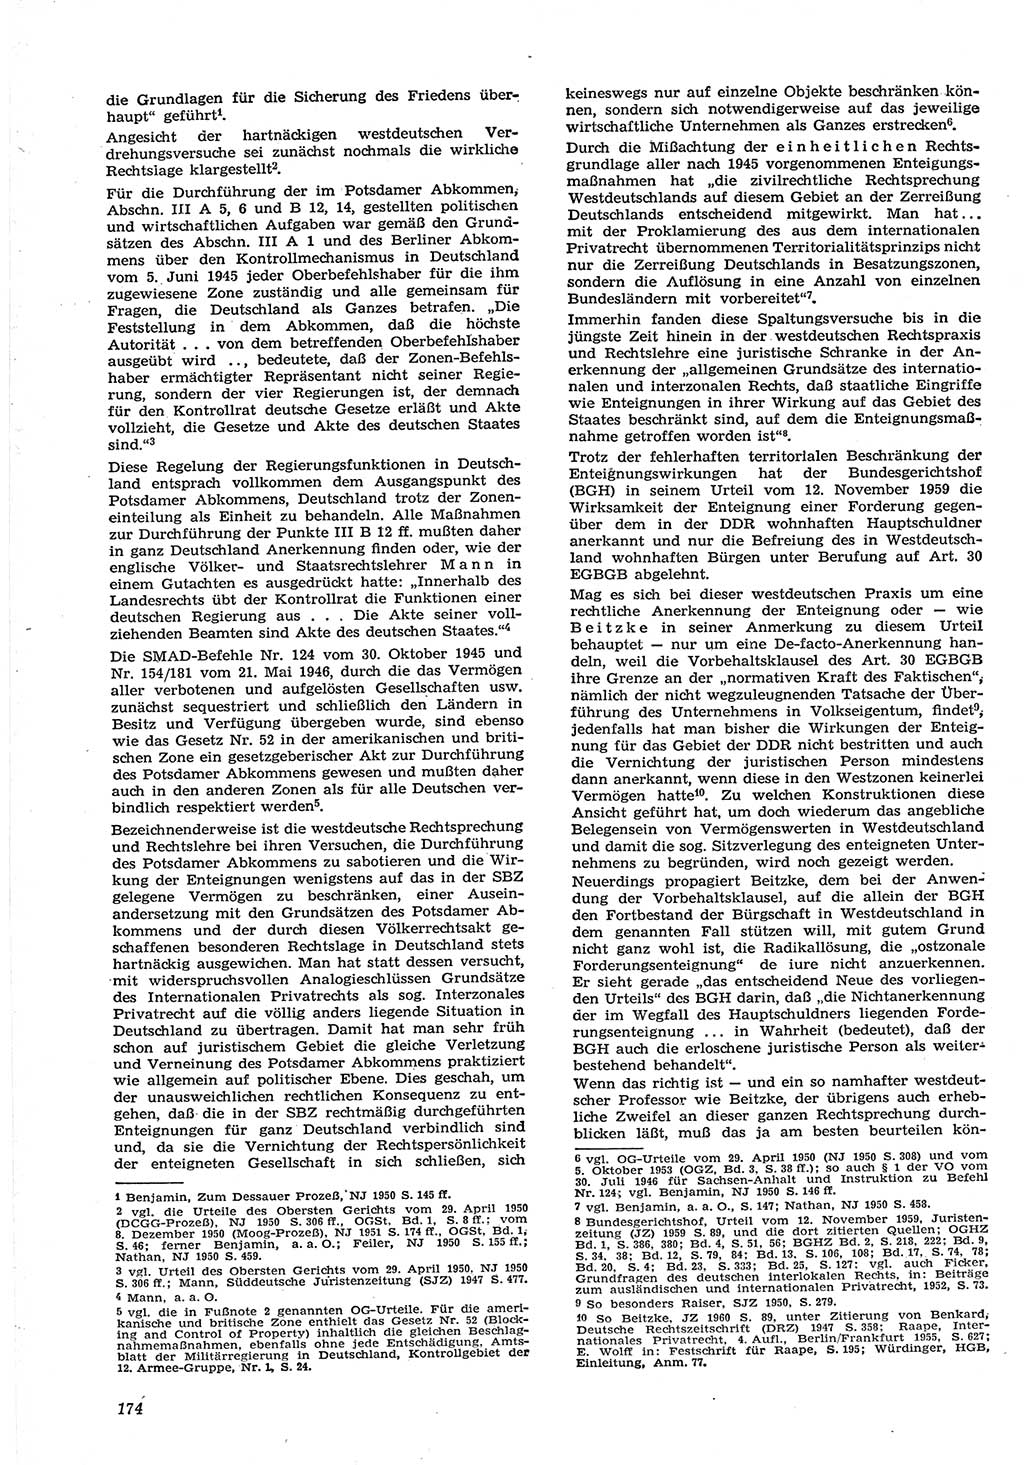 Neue Justiz (NJ), Zeitschrift für Recht und Rechtswissenschaft [Deutsche Demokratische Republik (DDR)], 15. Jahrgang 1961, Seite 174 (NJ DDR 1961, S. 174)